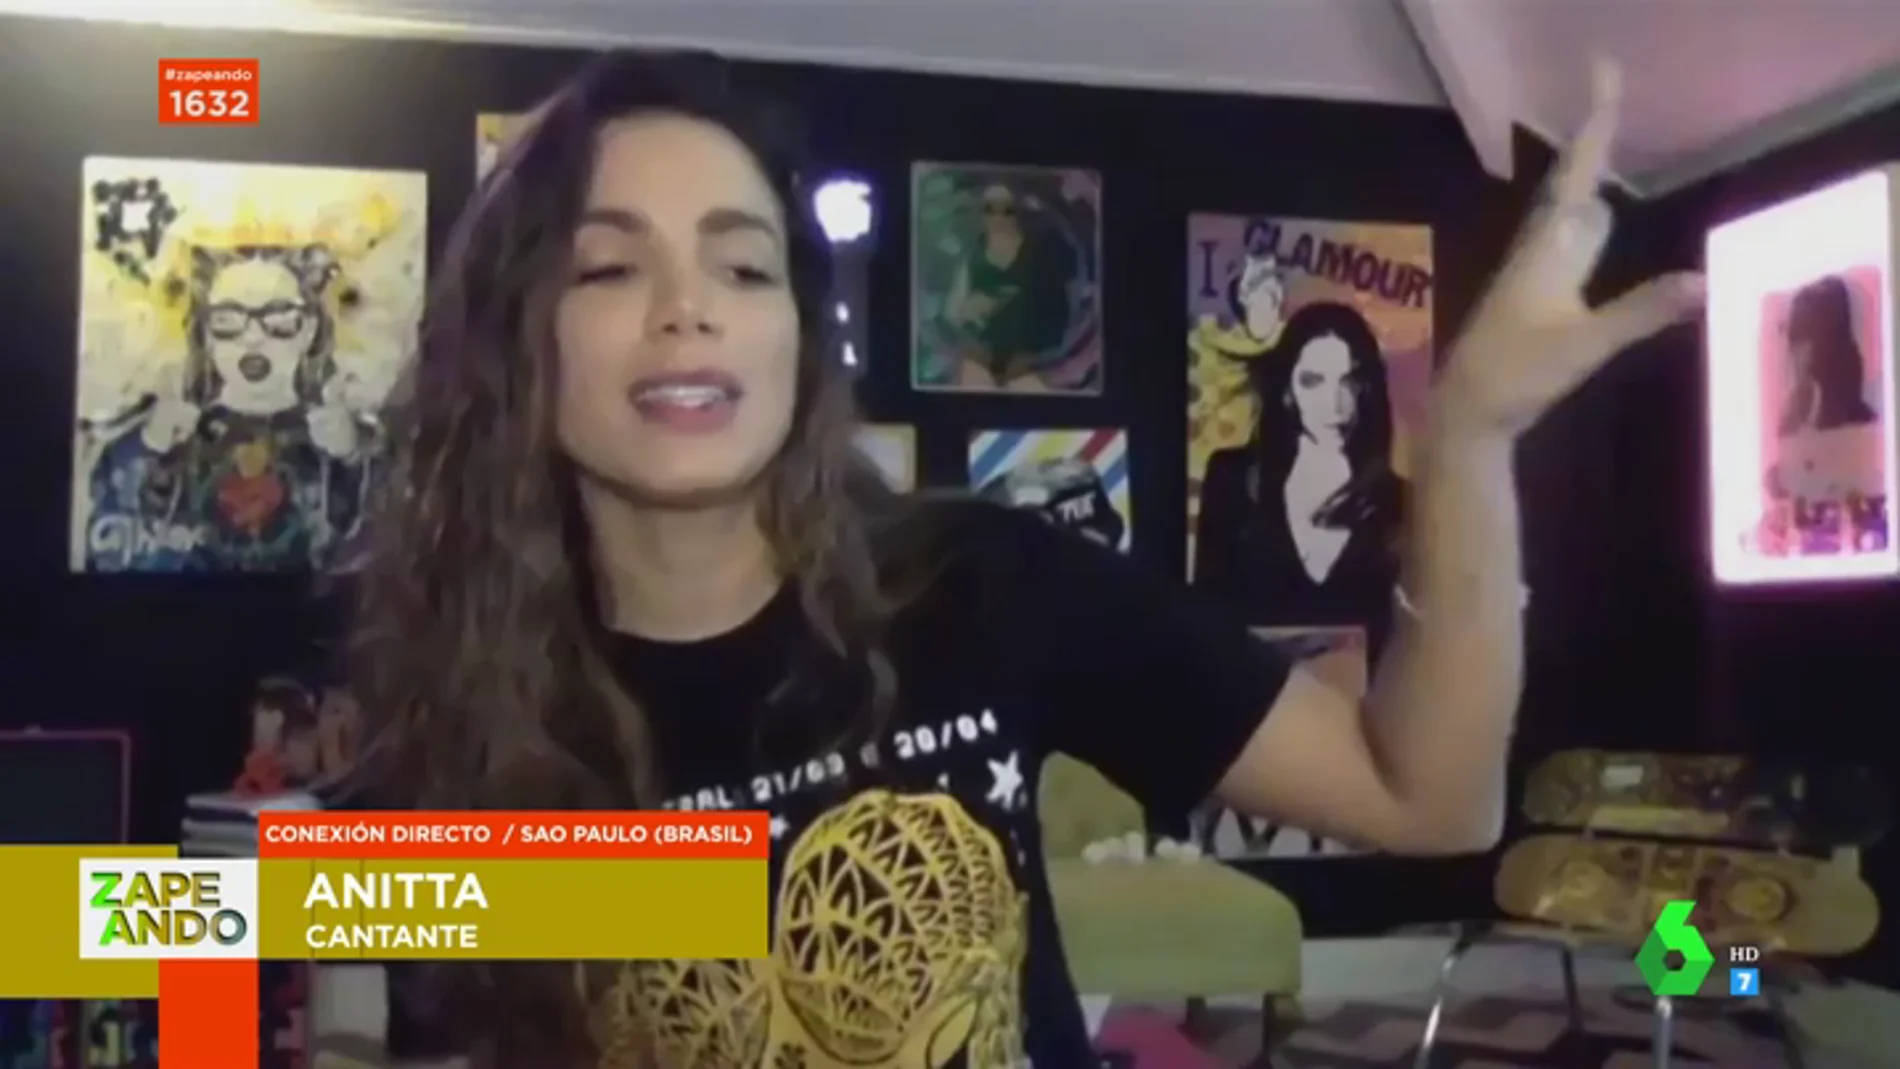 Anitta canta en Zapeando un adelanto de 'Tócame', su nuevo single